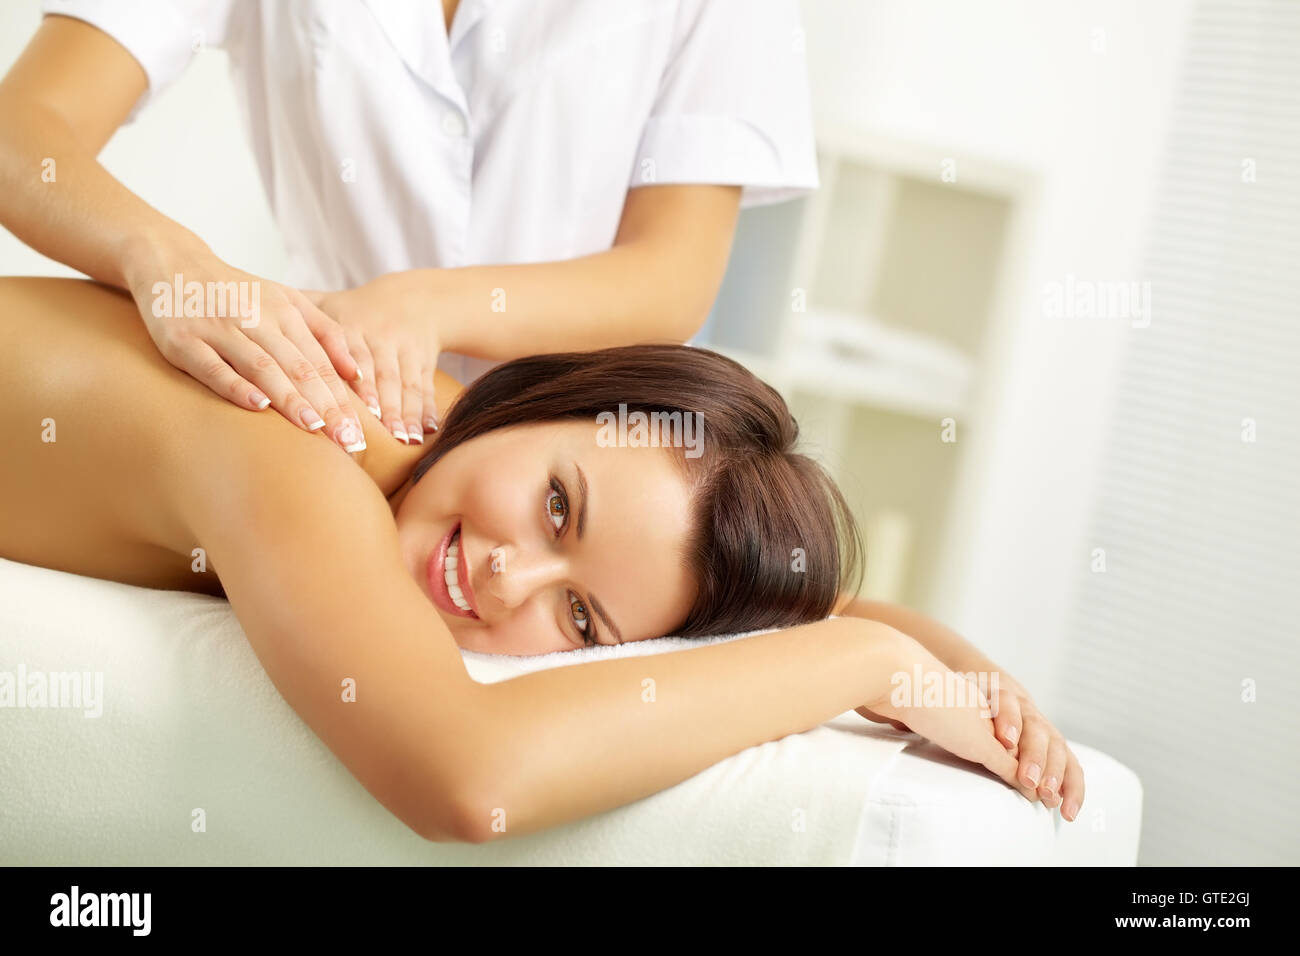 Woman at massage salon Stock Photo